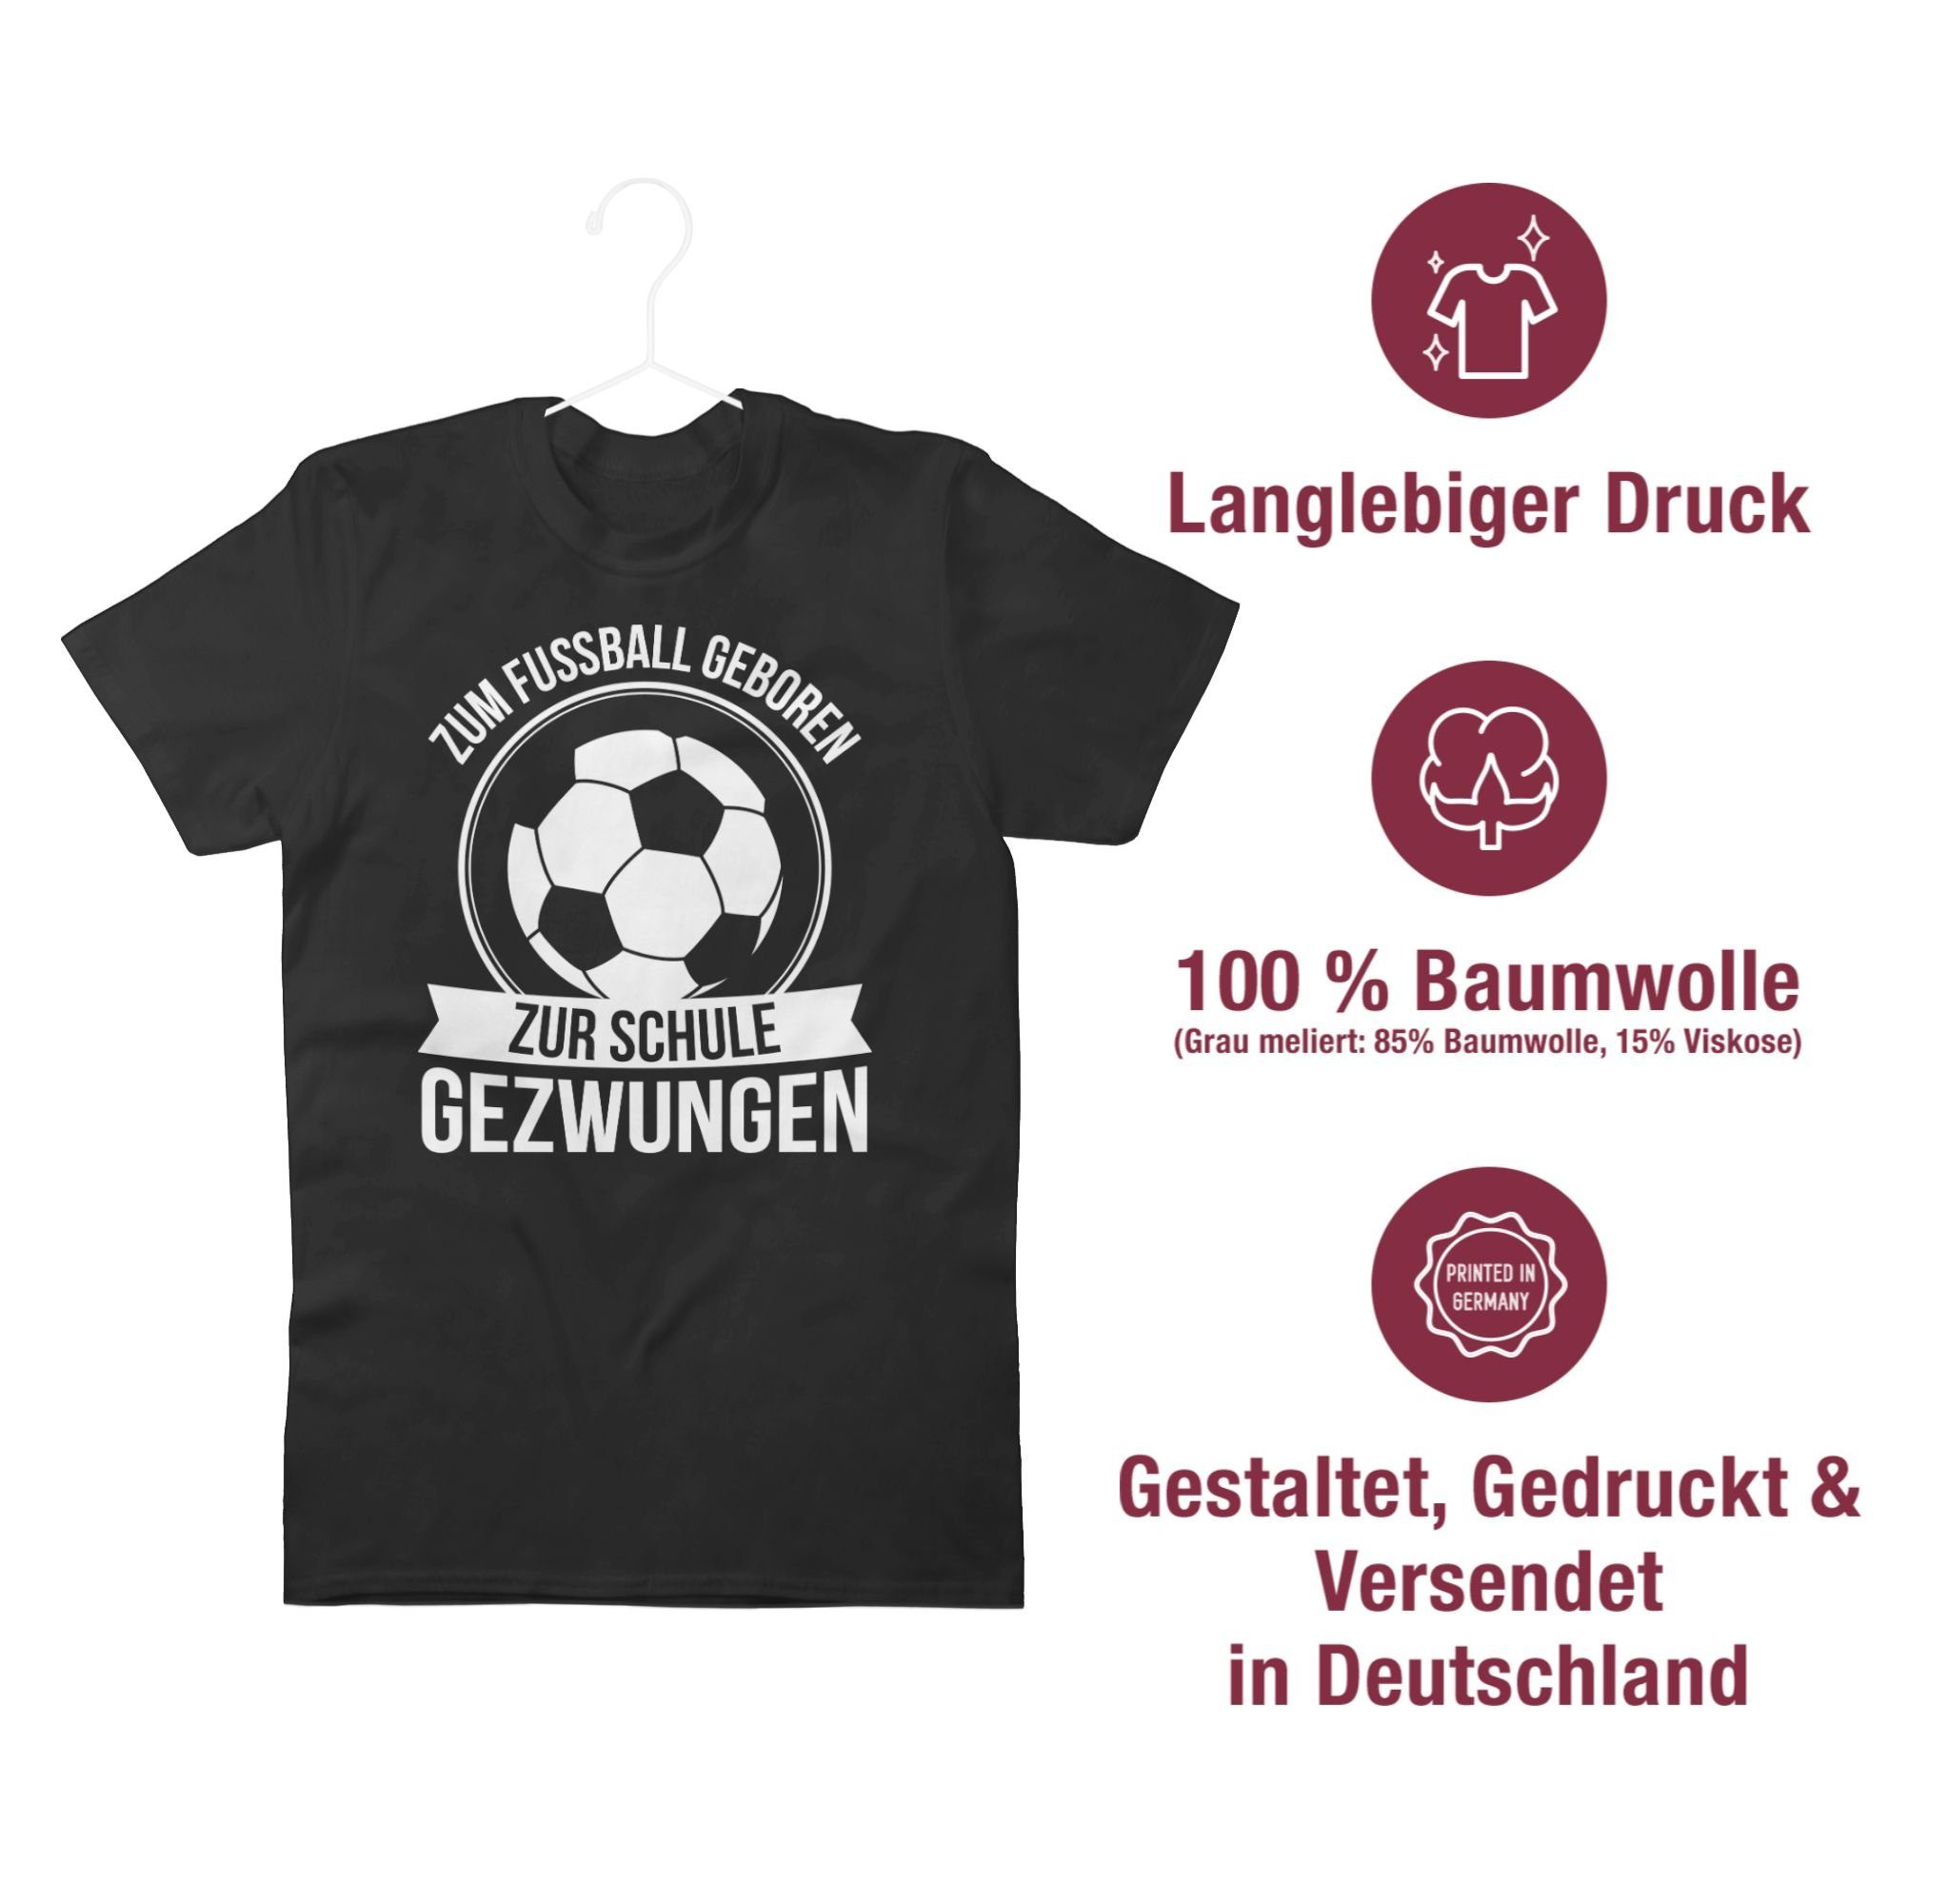 Schwarz Fußball 1 Zum EM geboren Schule Fussball T-Shirt zur 2024 gezwungen Shirtracer